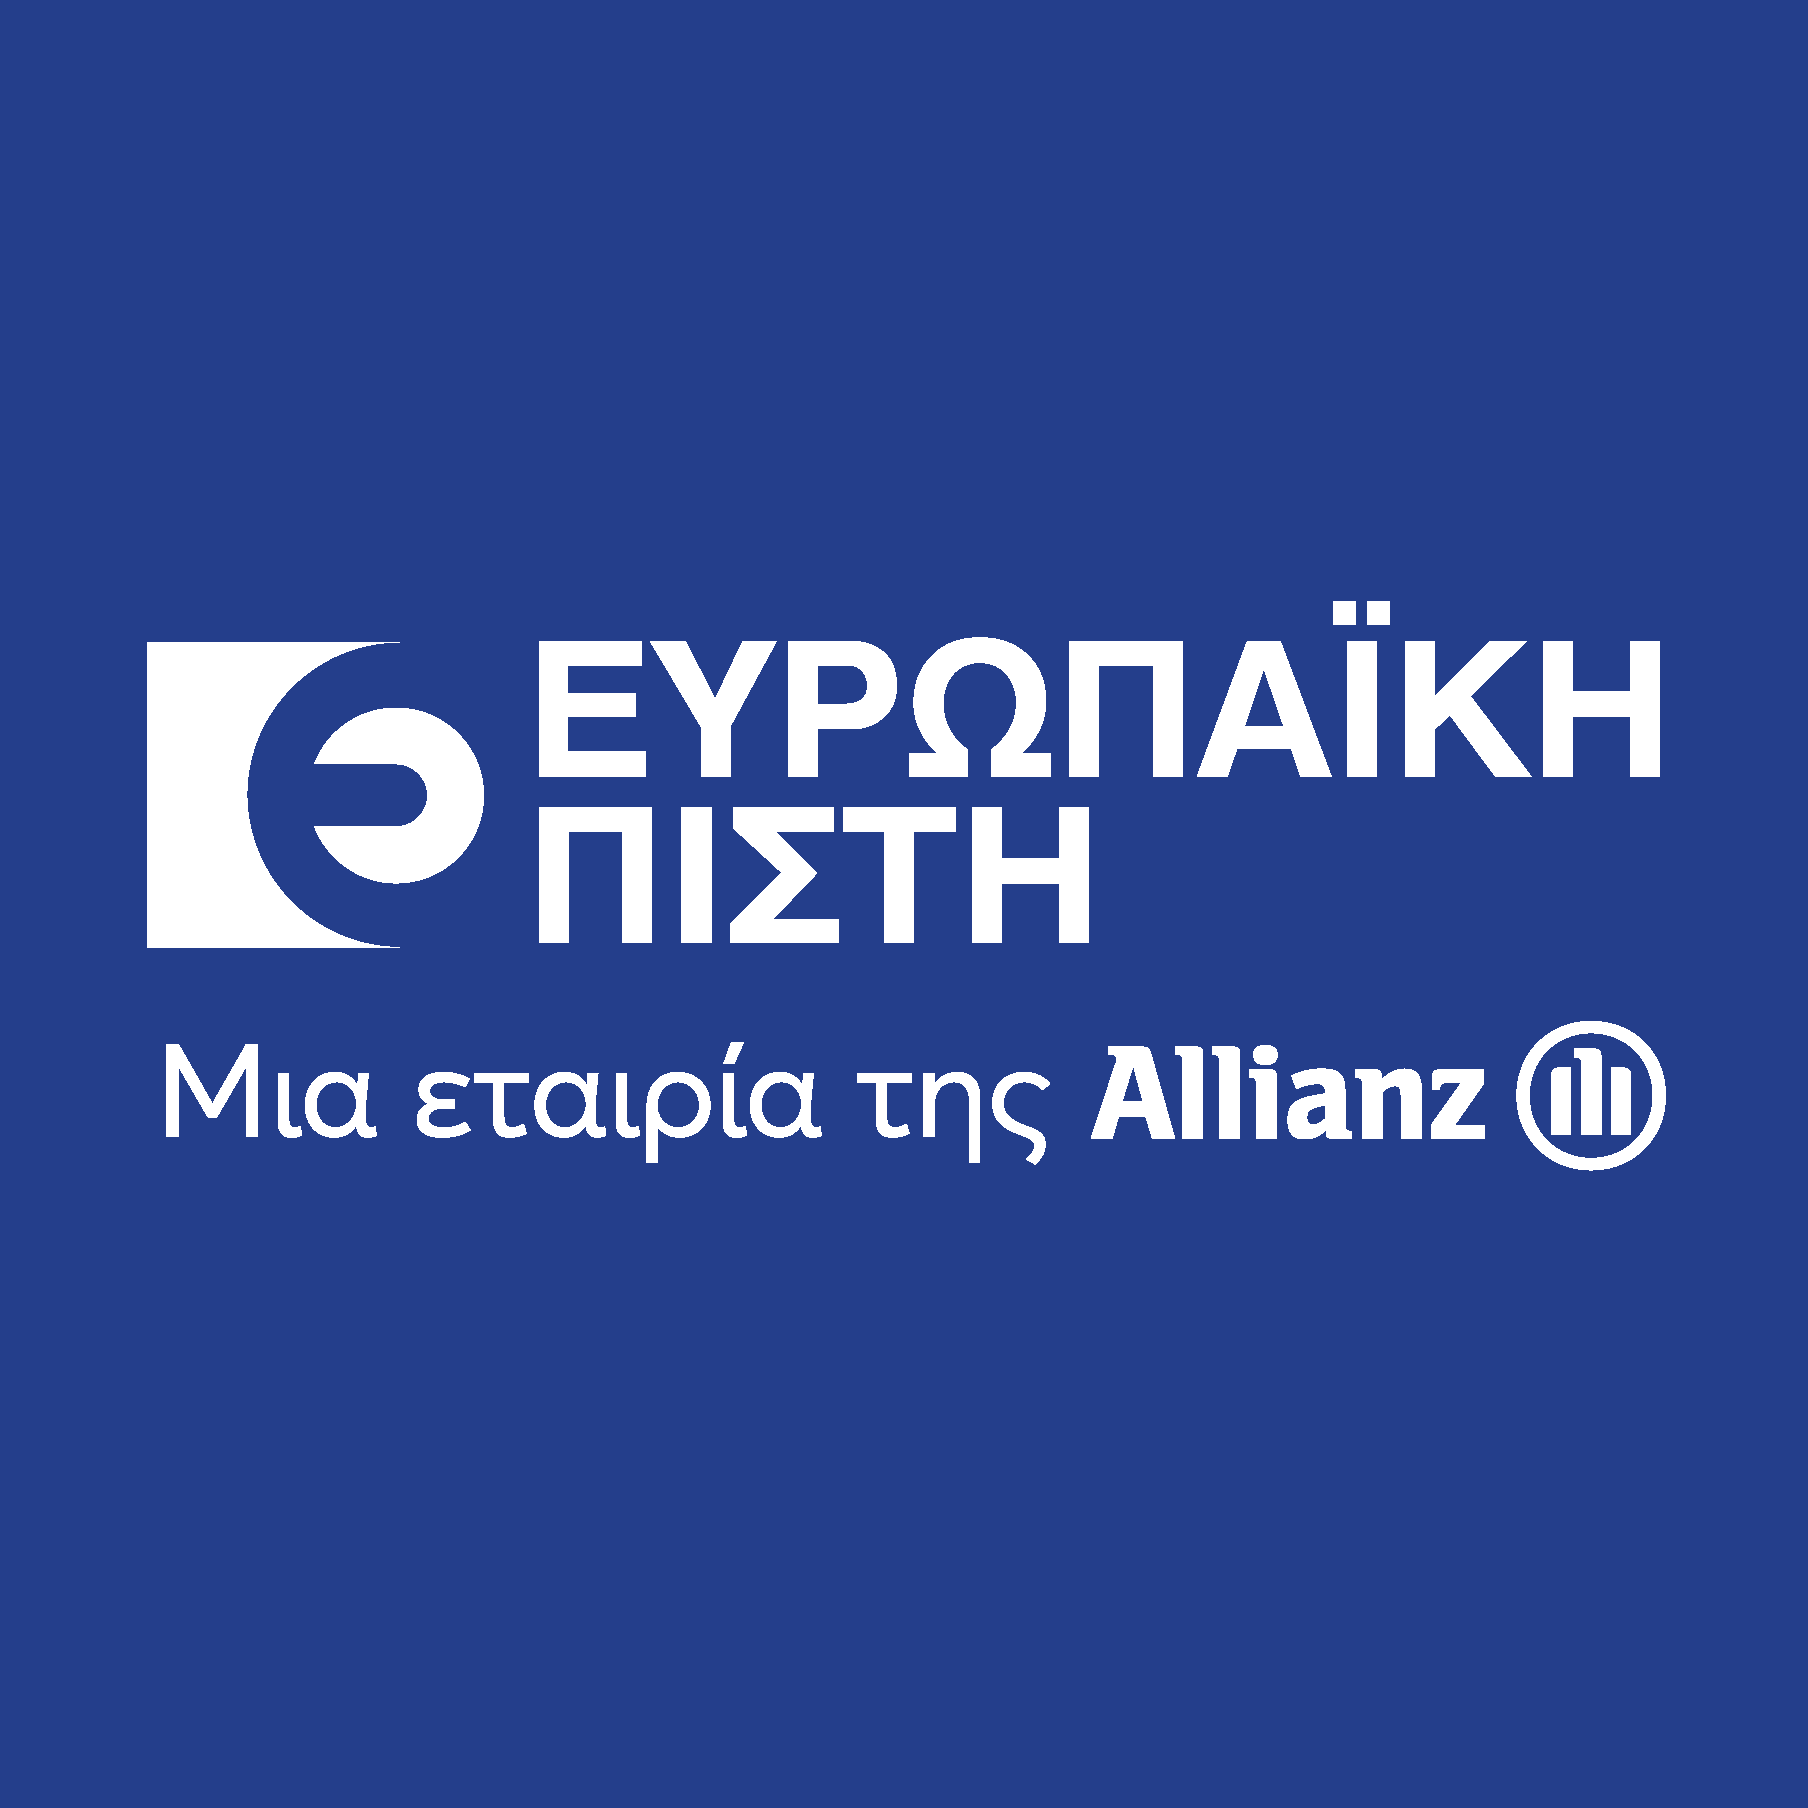 Europaiki Pisti A company of Allianz Logo Vector